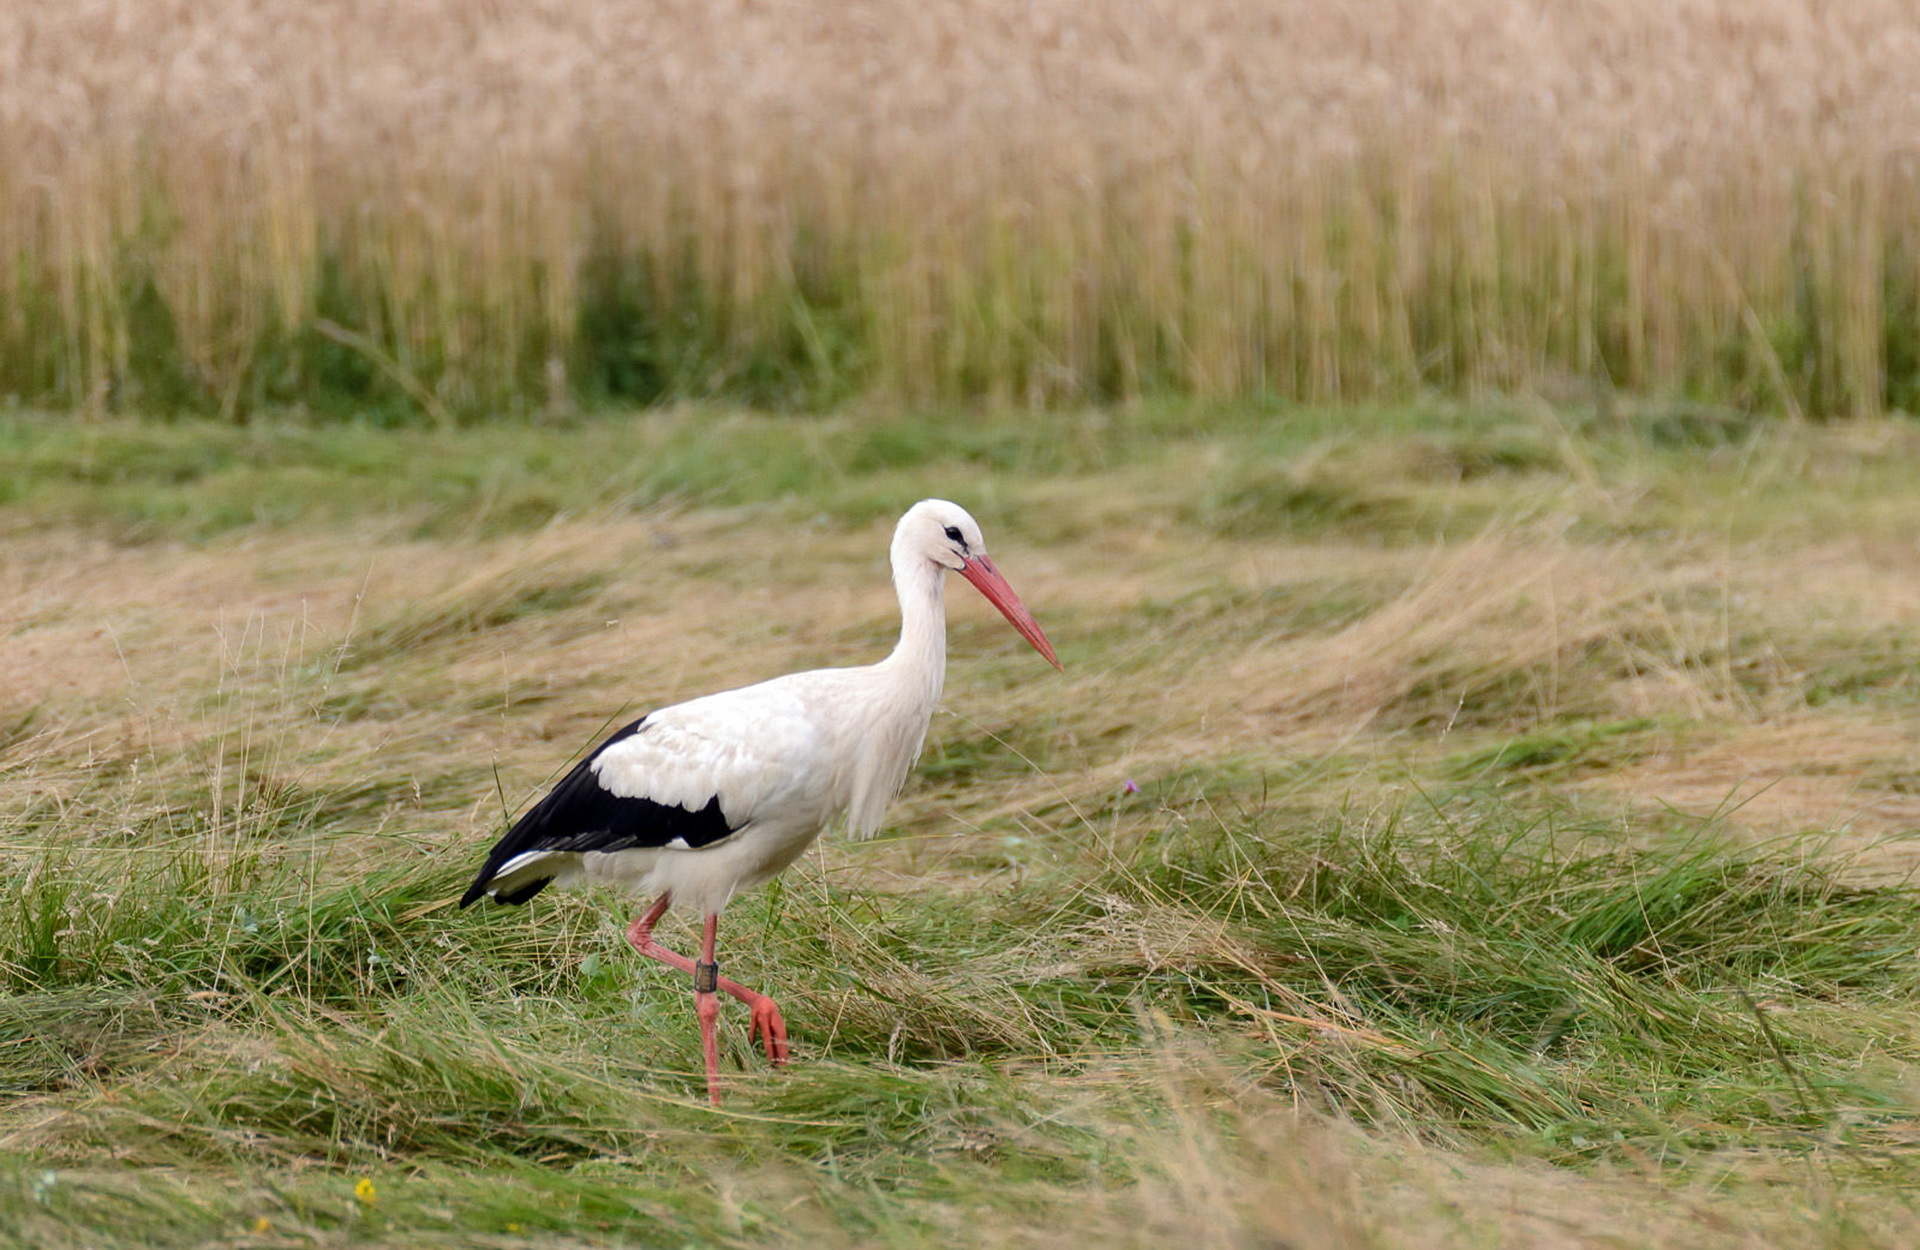 Download mobile wallpaper Birds, Grass, Bird, Animal, Stork, White Stork for free.